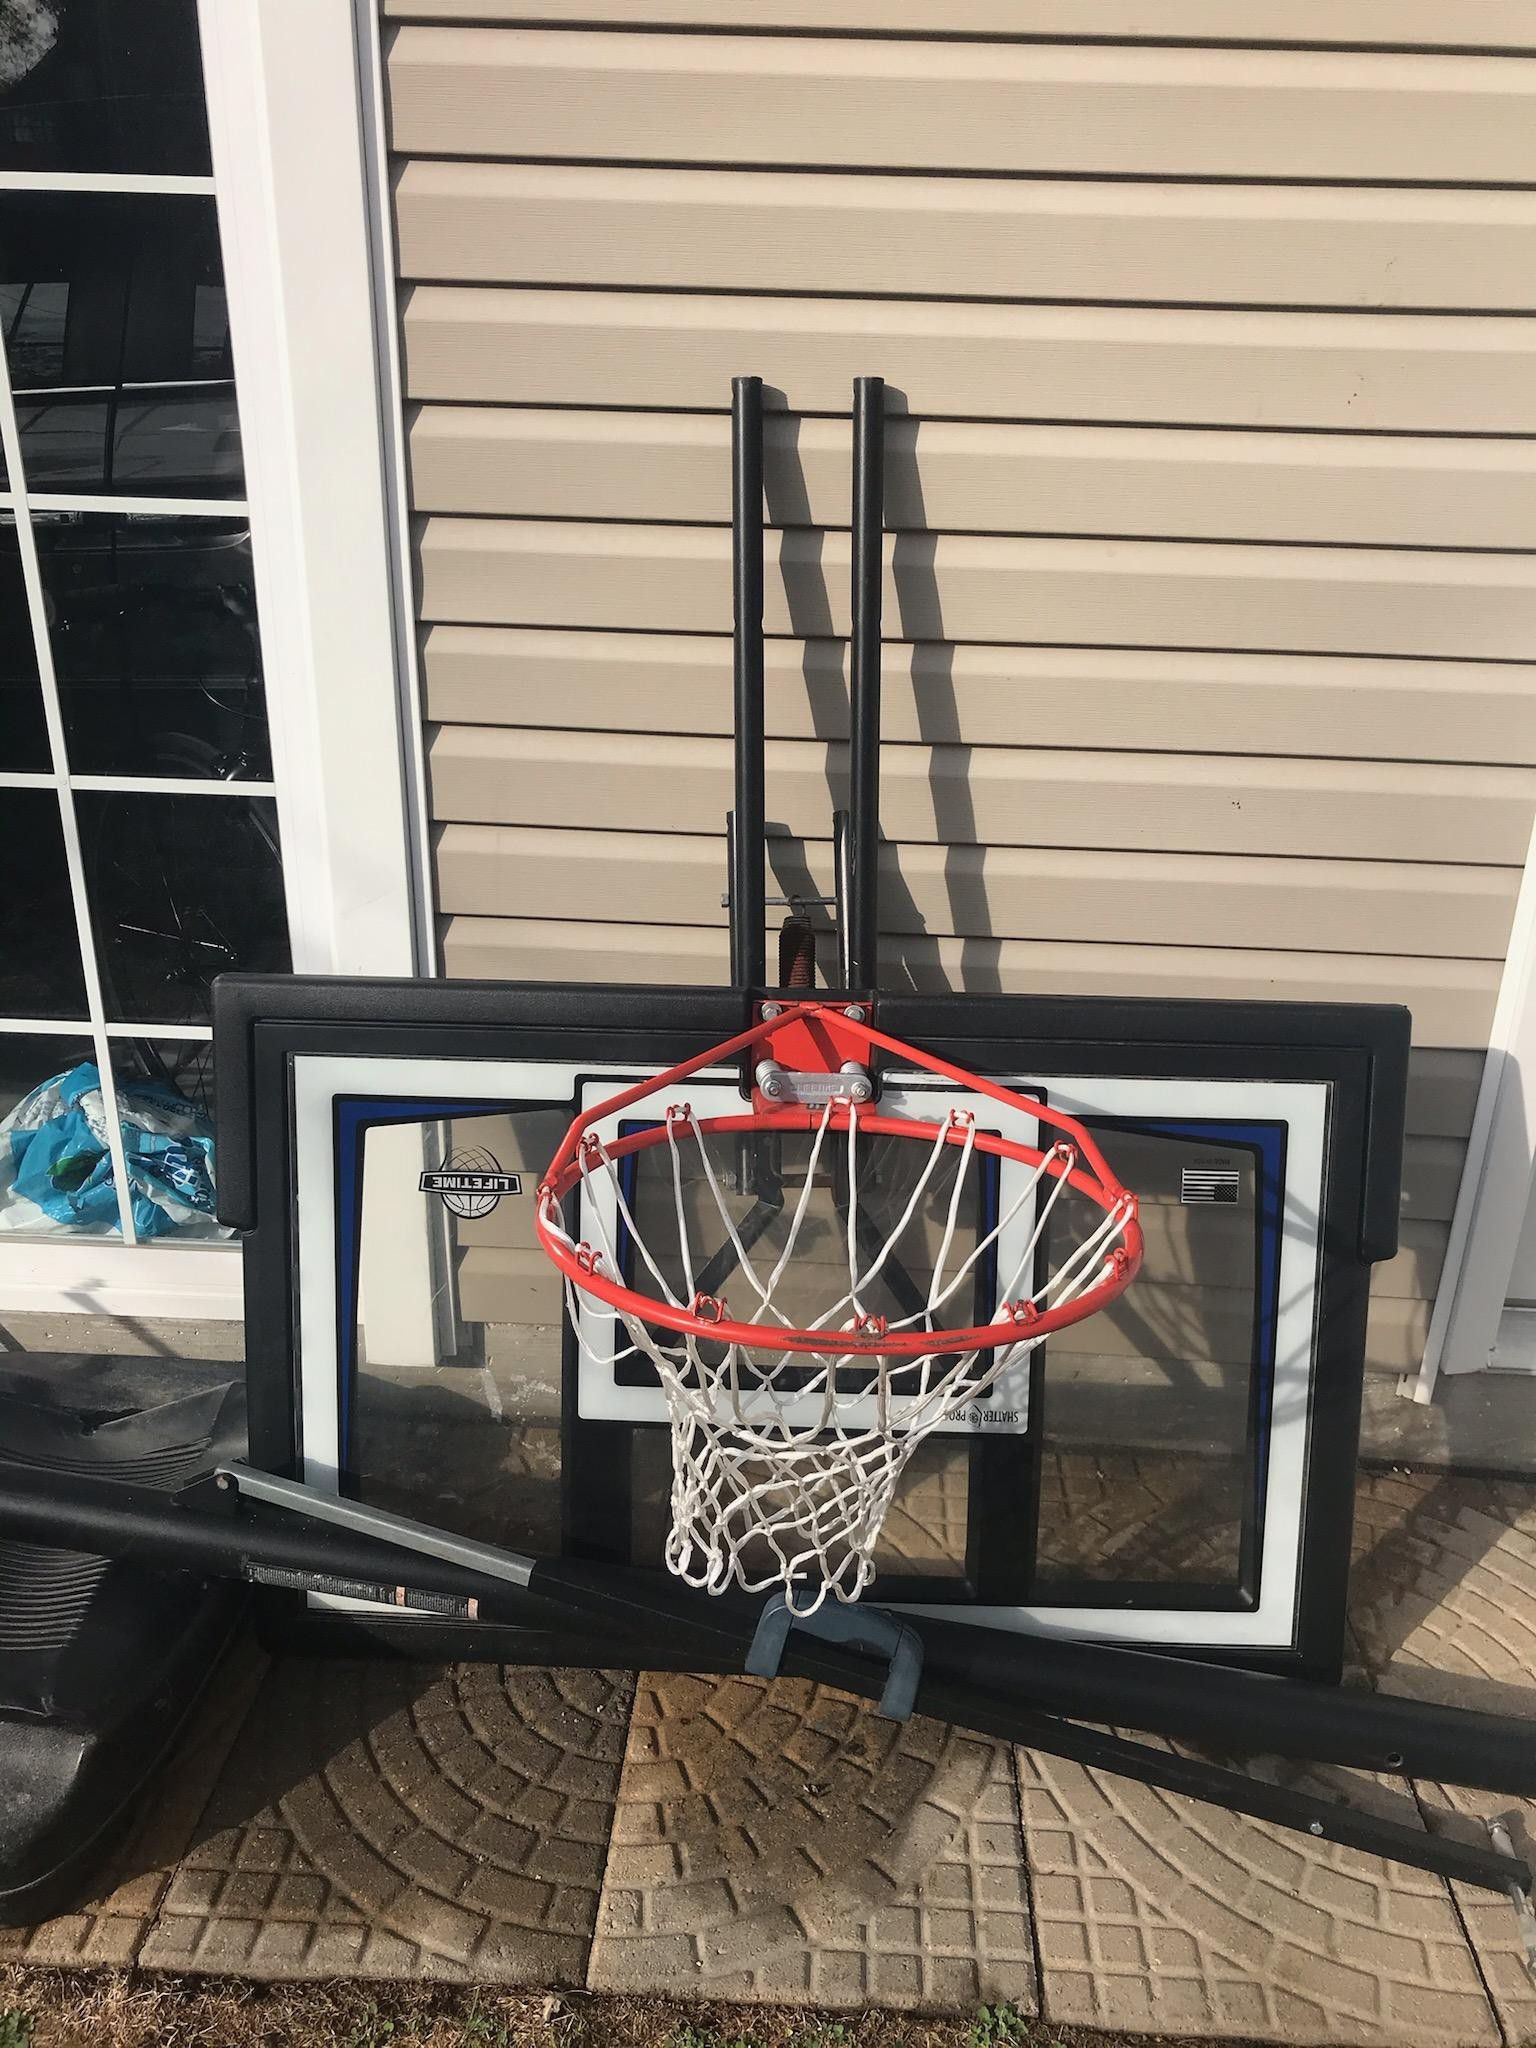 Lifetime 50 inch basketball hoop